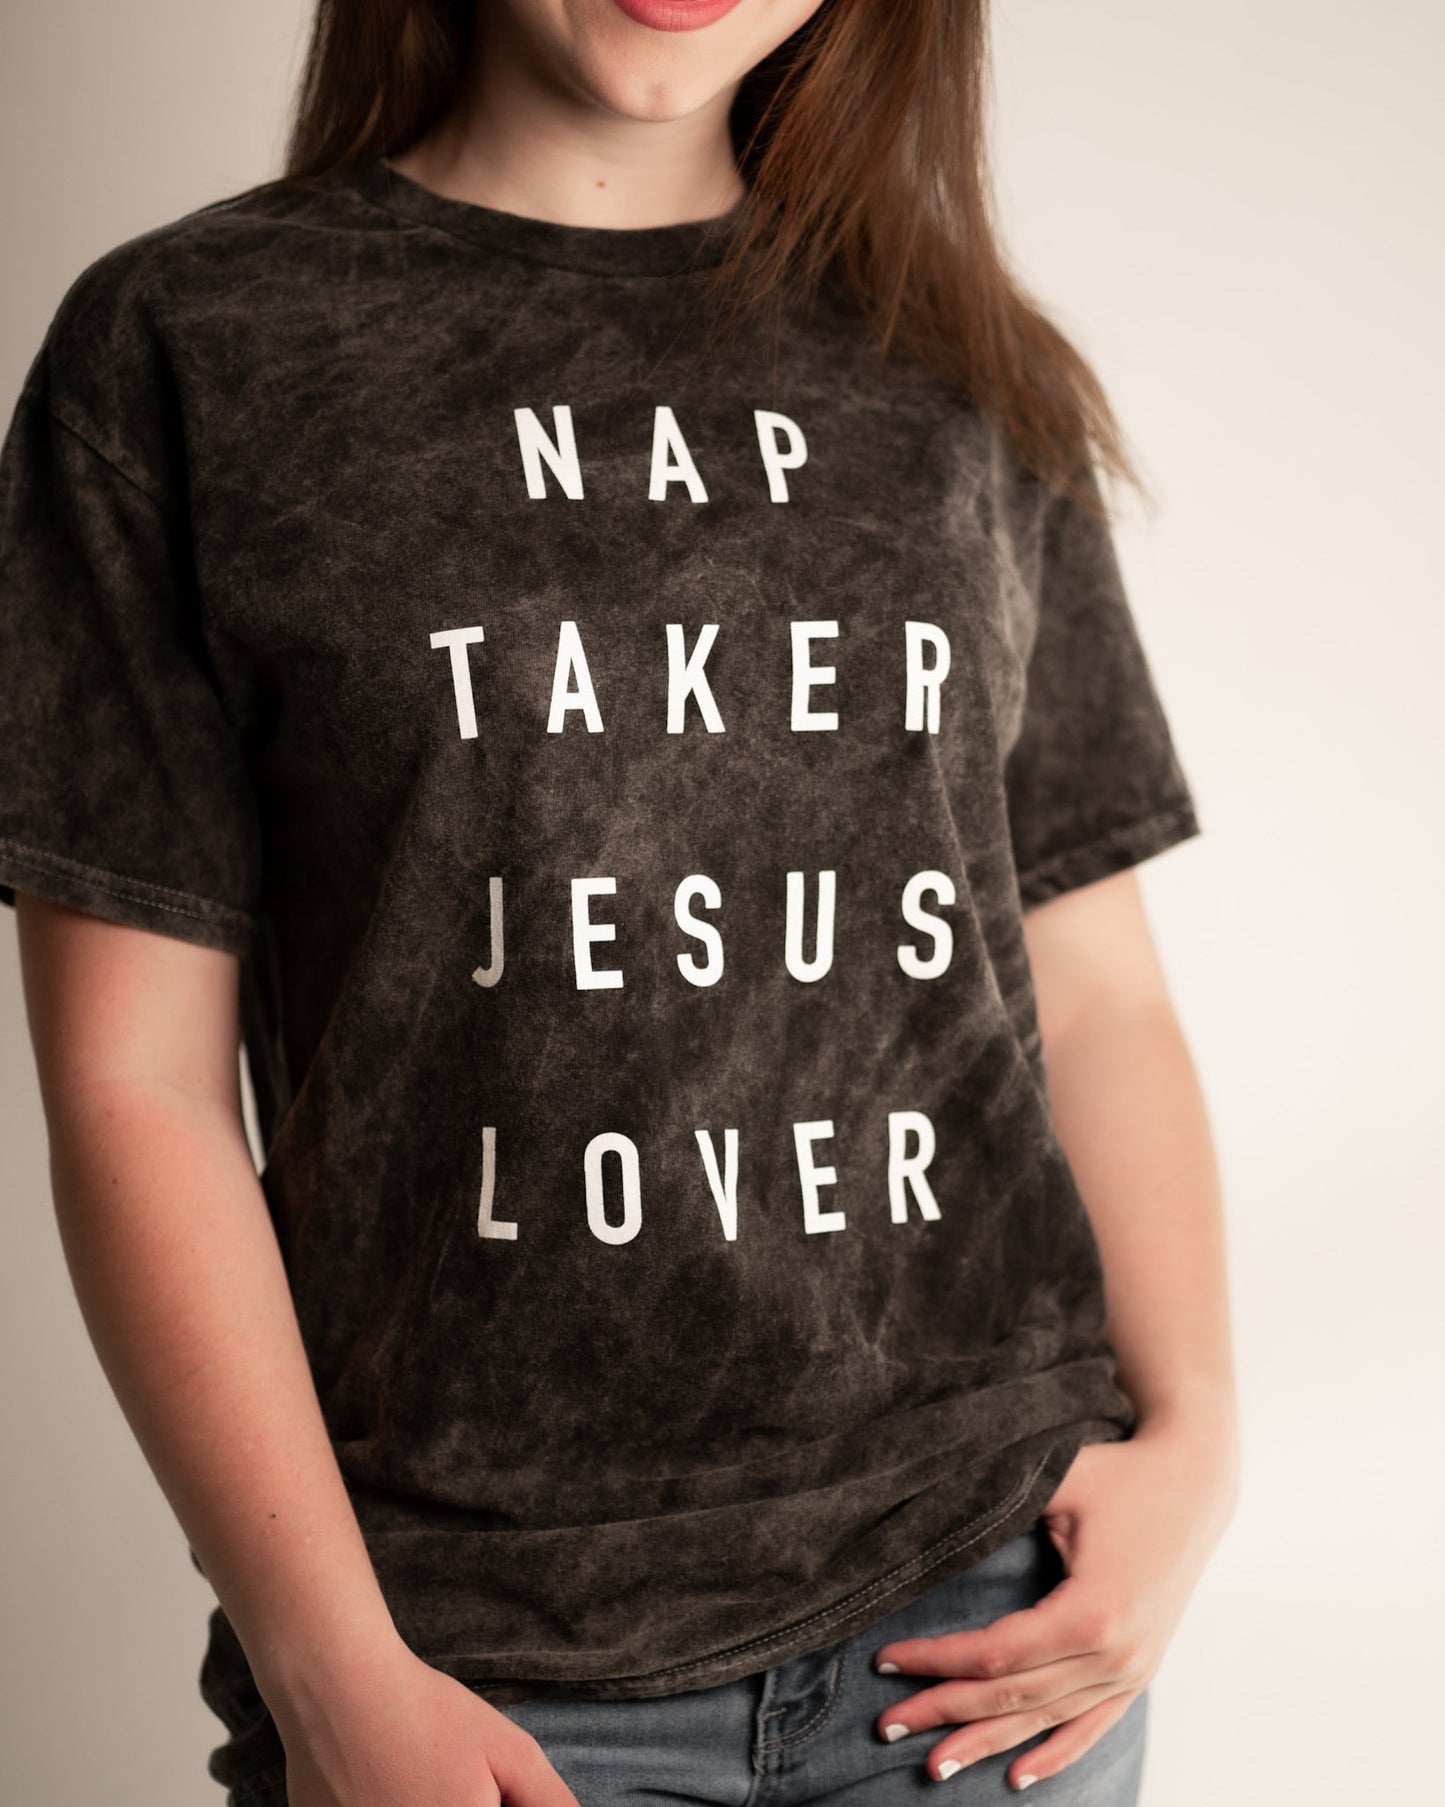 Nap Taker Jesus Lover Graphic Tank